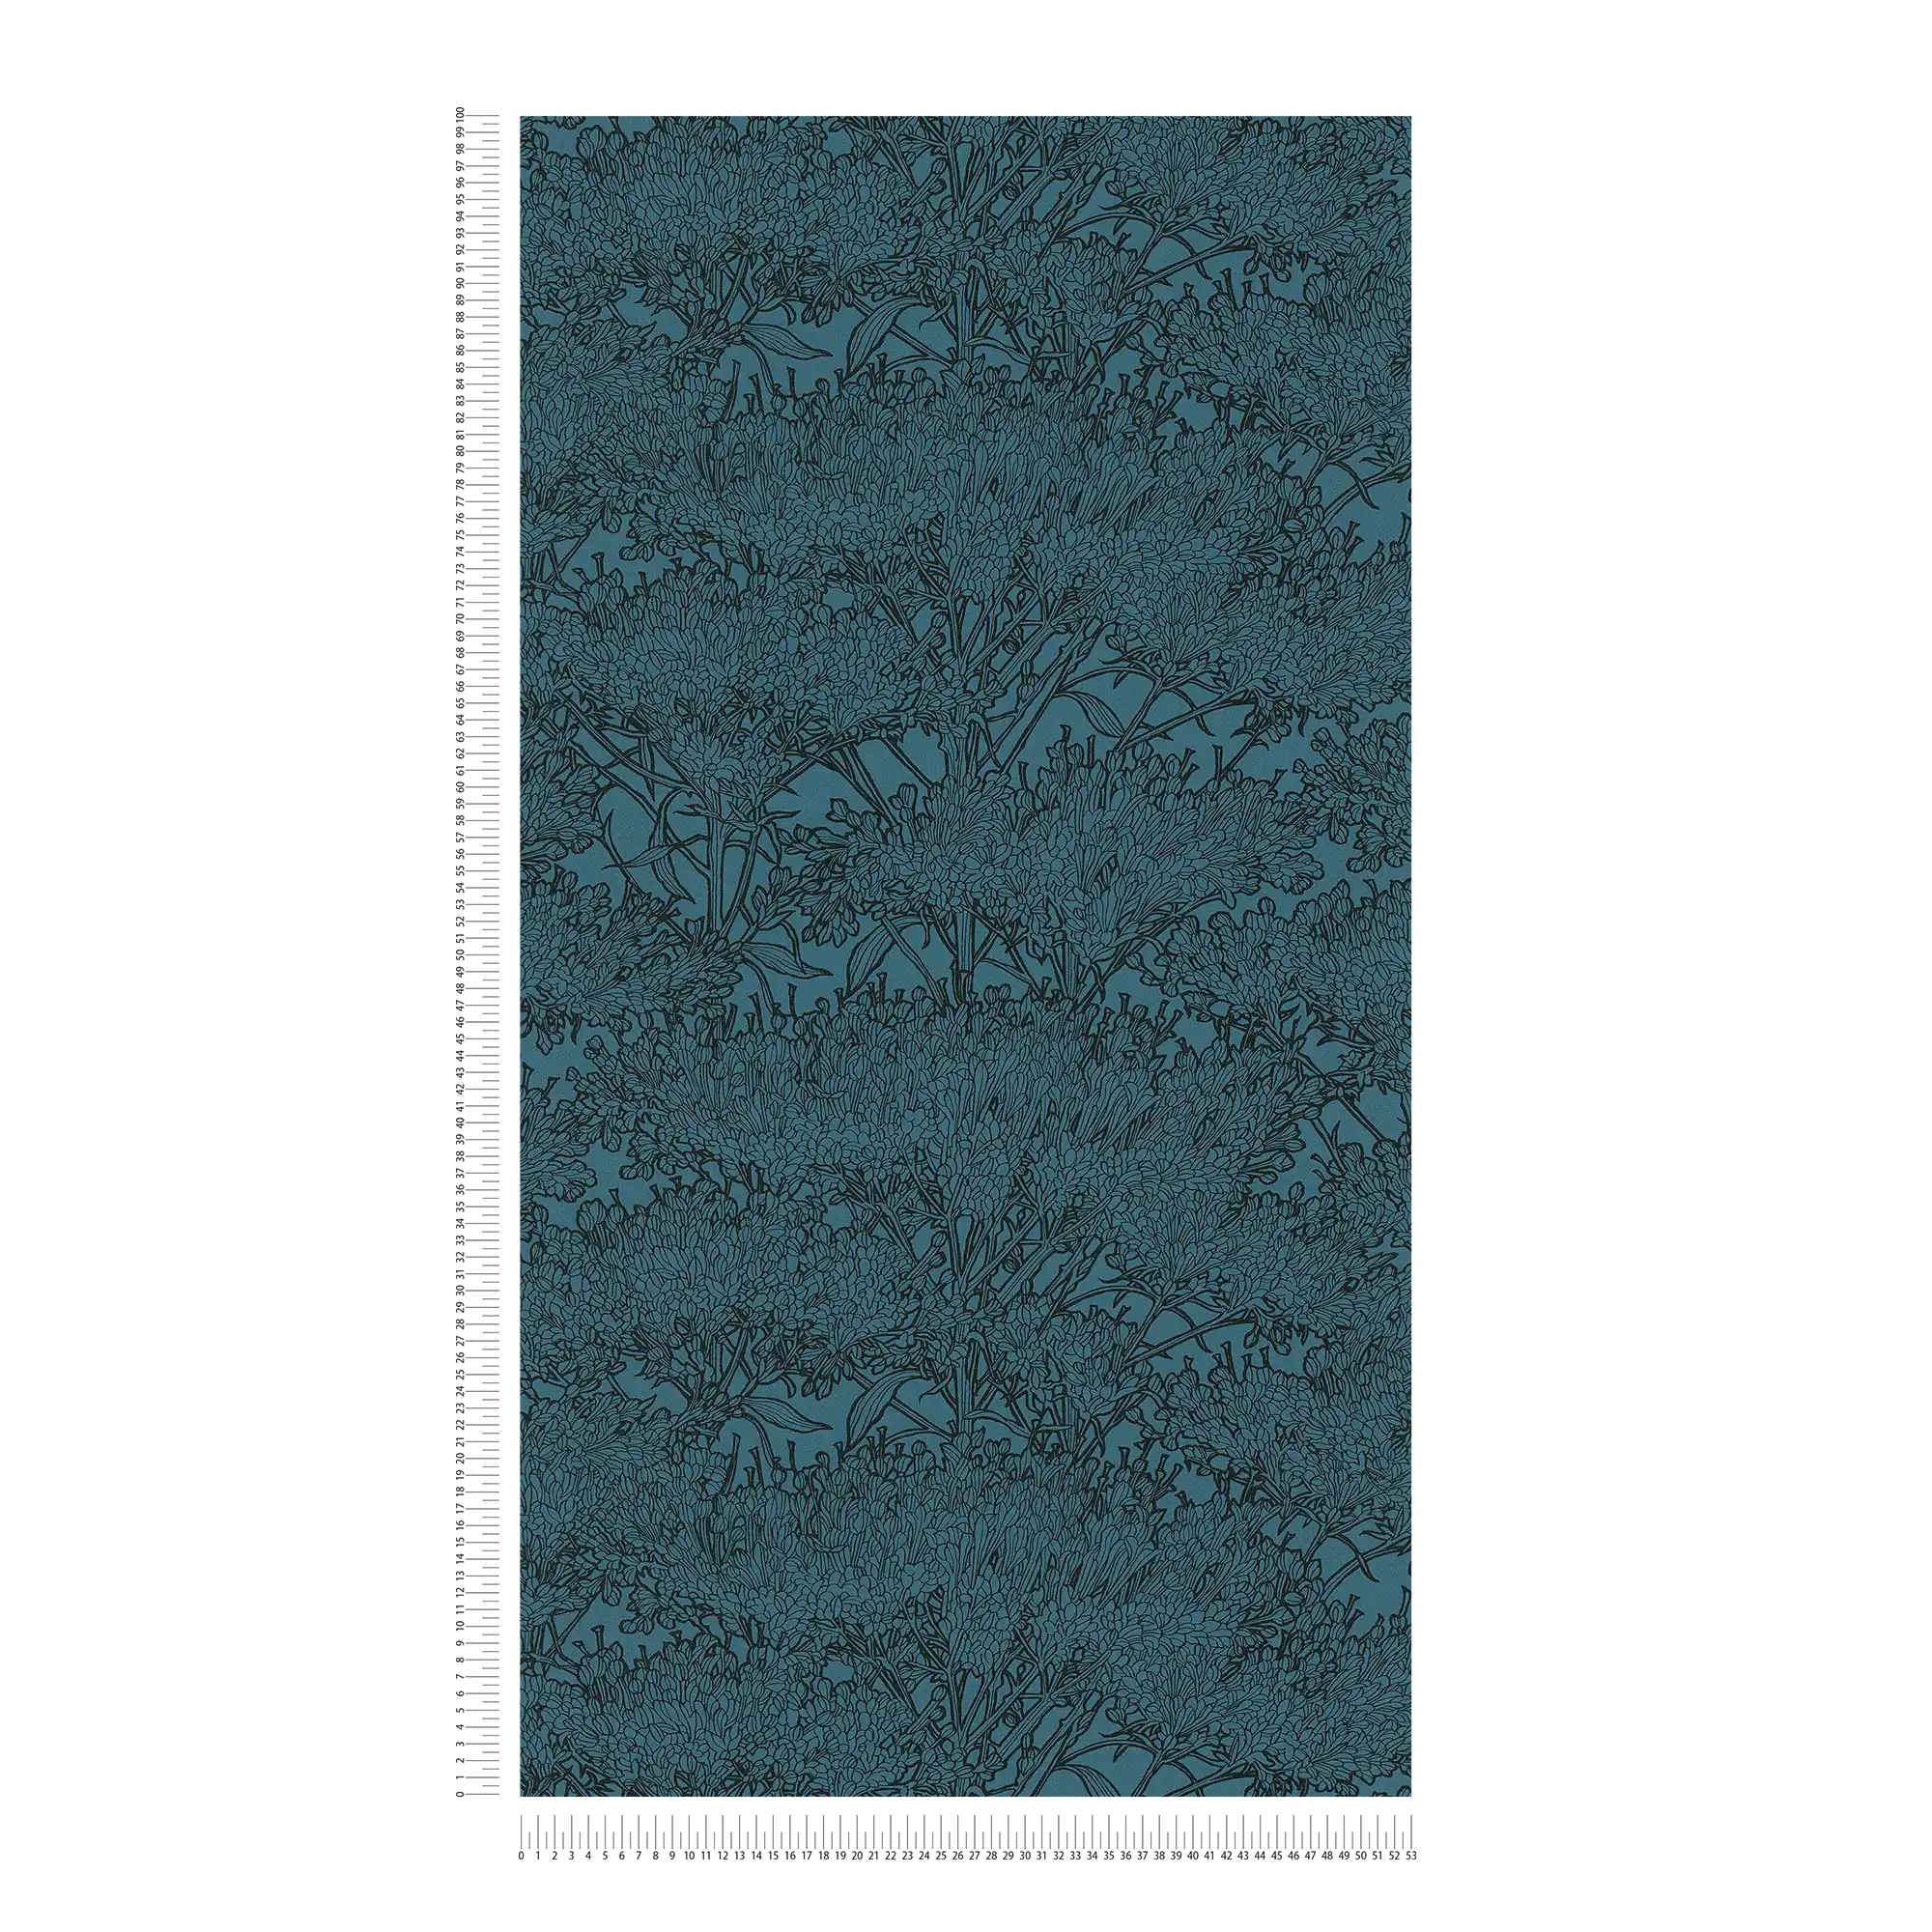             Carta da parati floreale color petrolio con contorni neri - Blu, Nero
        